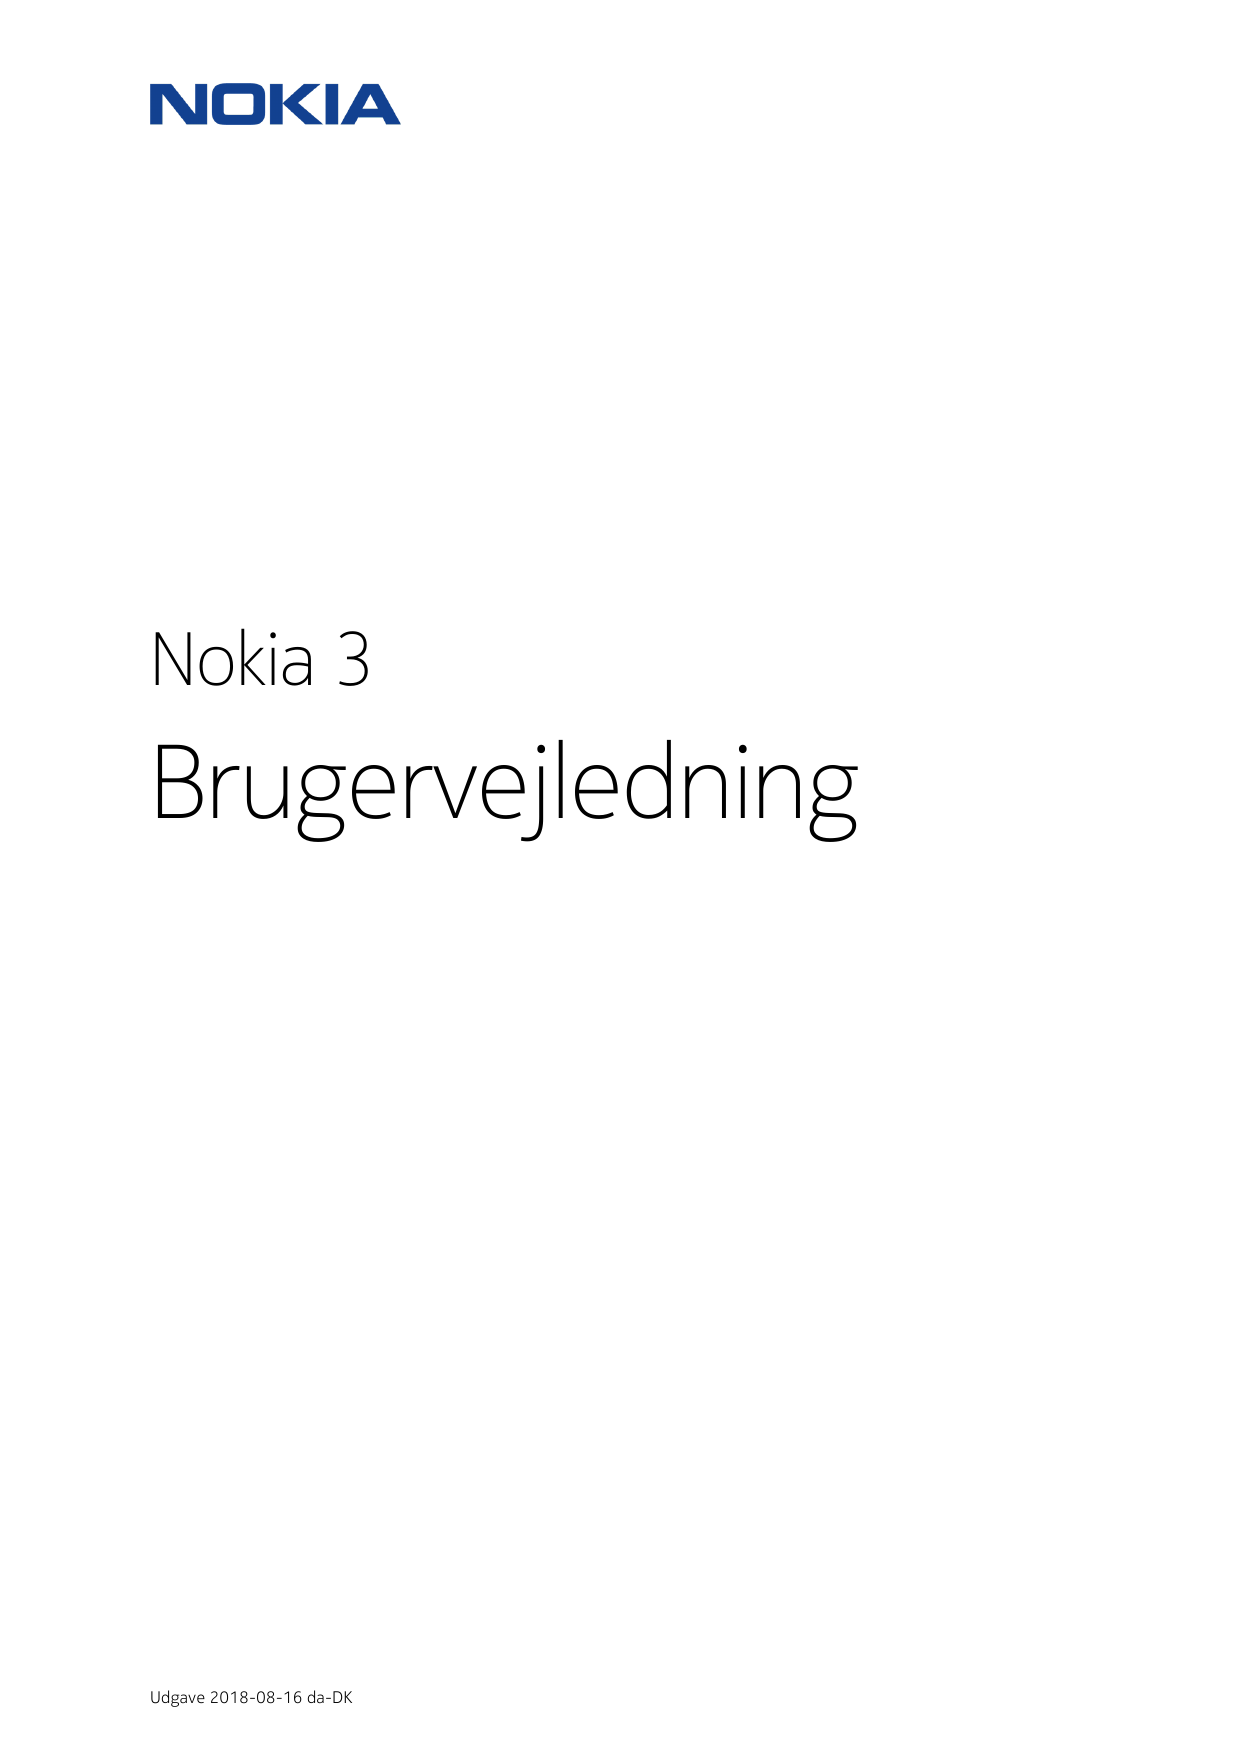 Nokia 3BrugervejledningUdgave 2018-08-16 da-DK